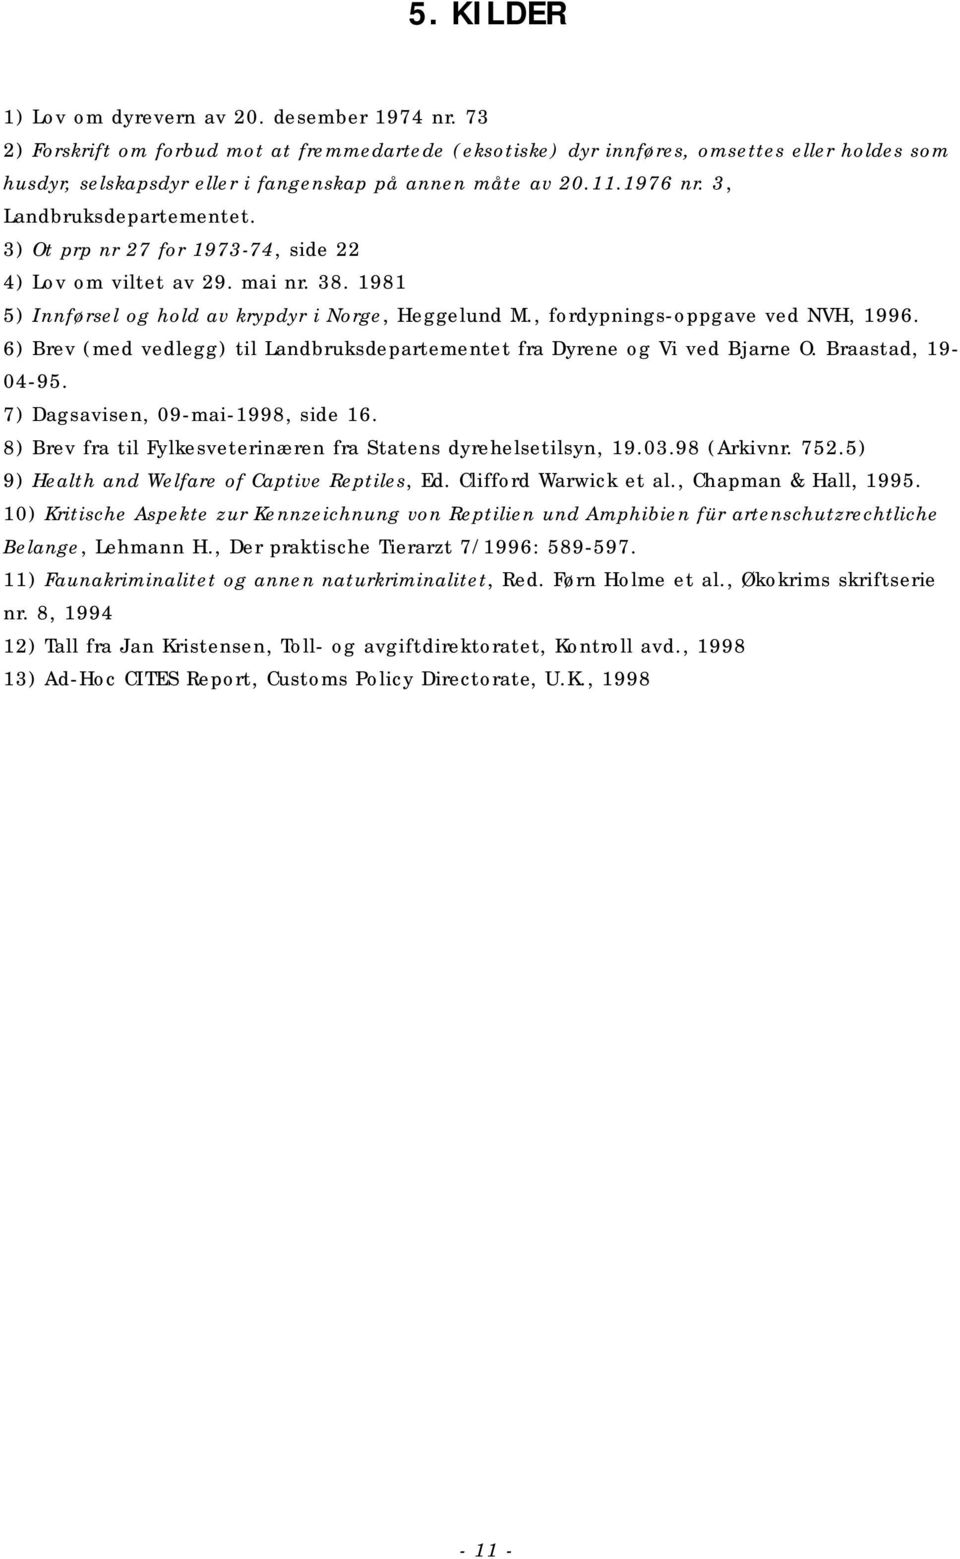 3) Ot prp nr 27 for 1973-74, side 22 4) Lov om viltet av 29. mai nr. 38. 1981 5) Innførsel og hold av krypdyr i Norge, Heggelund M., fordypnings-oppgave ved NVH, 1996.